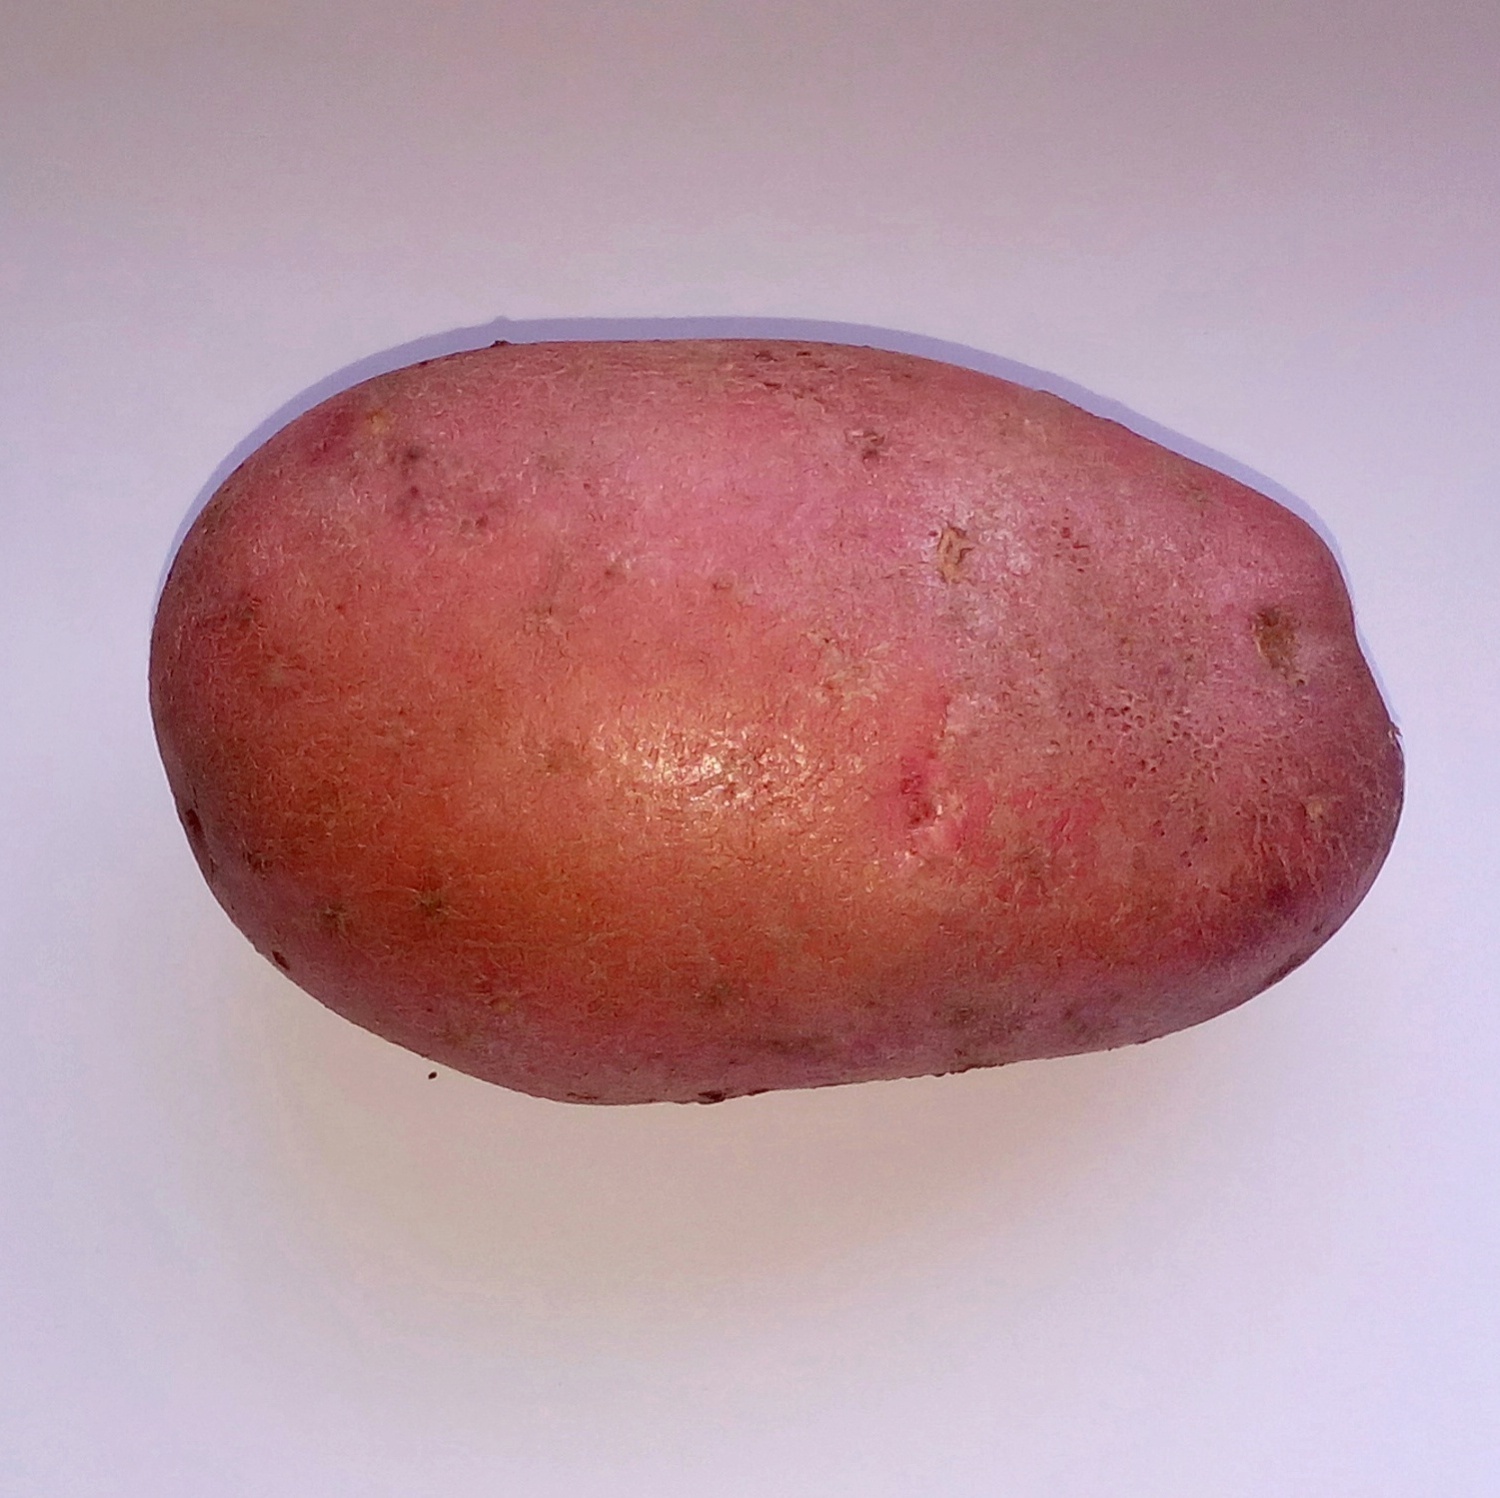 сорт картошки розара фото